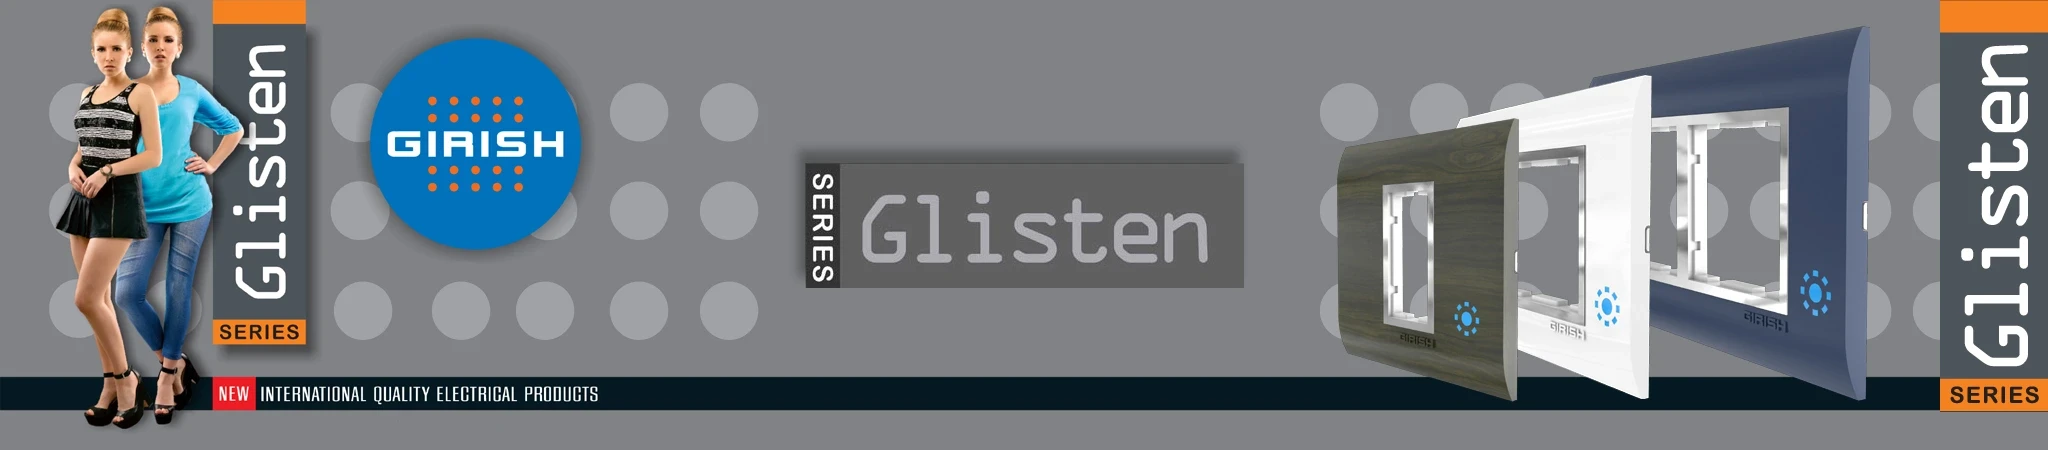 Glisten-Plus-Plates